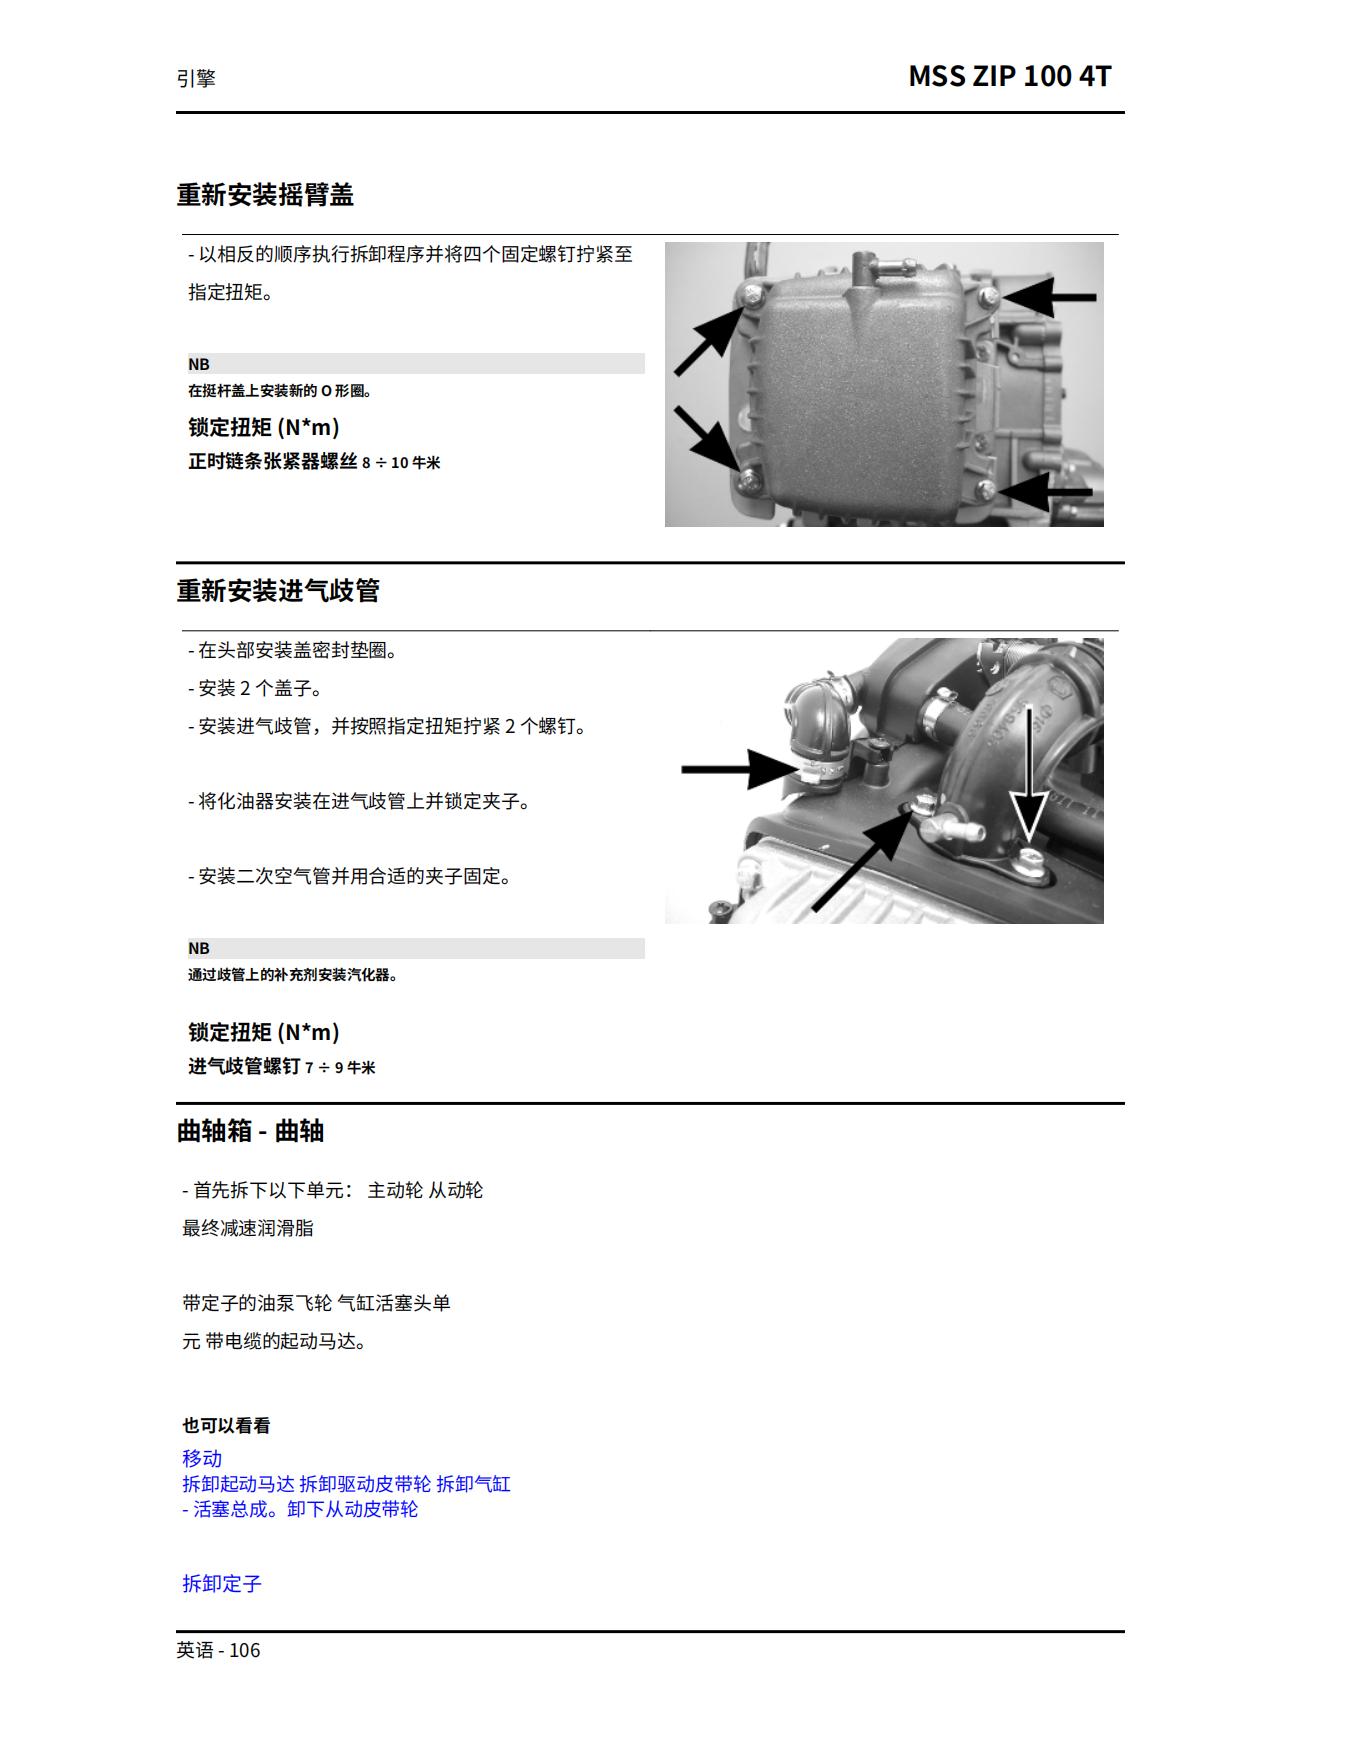 简体中文2007年比亚乔FLY125FLY150维修手册插图3